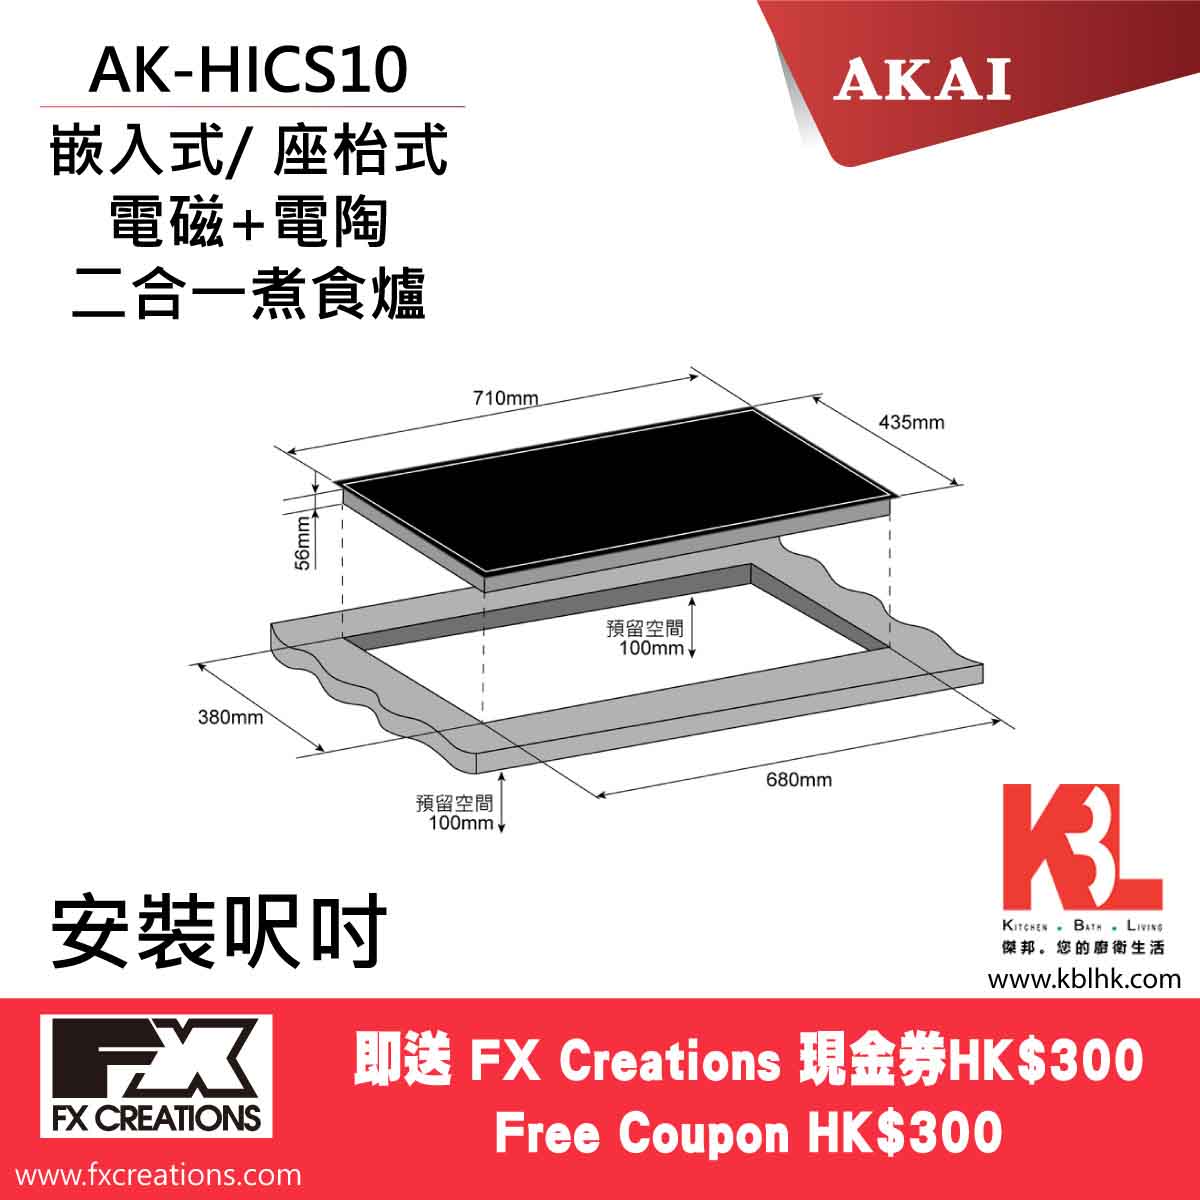 AKAI 雅佳 嵌入式電磁電陶爐 AK-HICS10（送 $300 現金券）